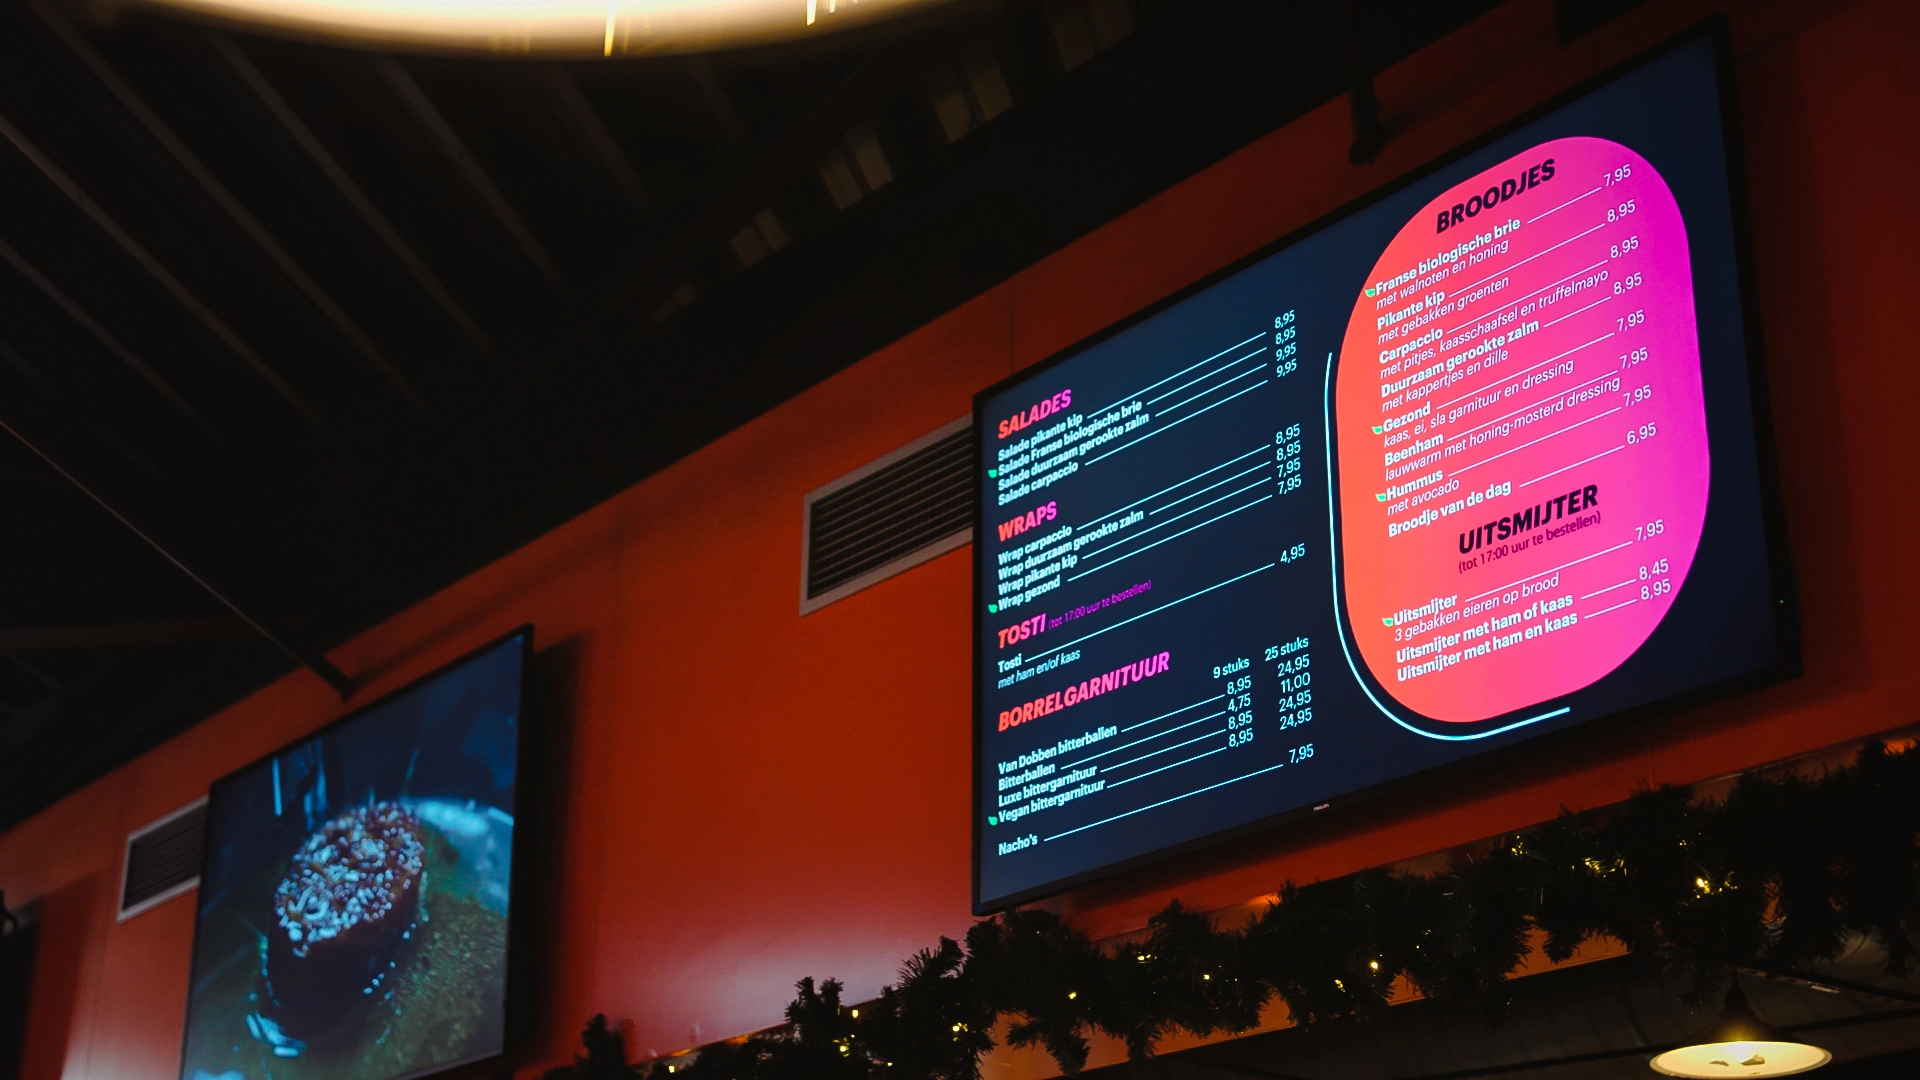 Restaurant menukaart weergegeven op een tv-scherm bij De Uithof, ontworpen door Marketing in Beeld